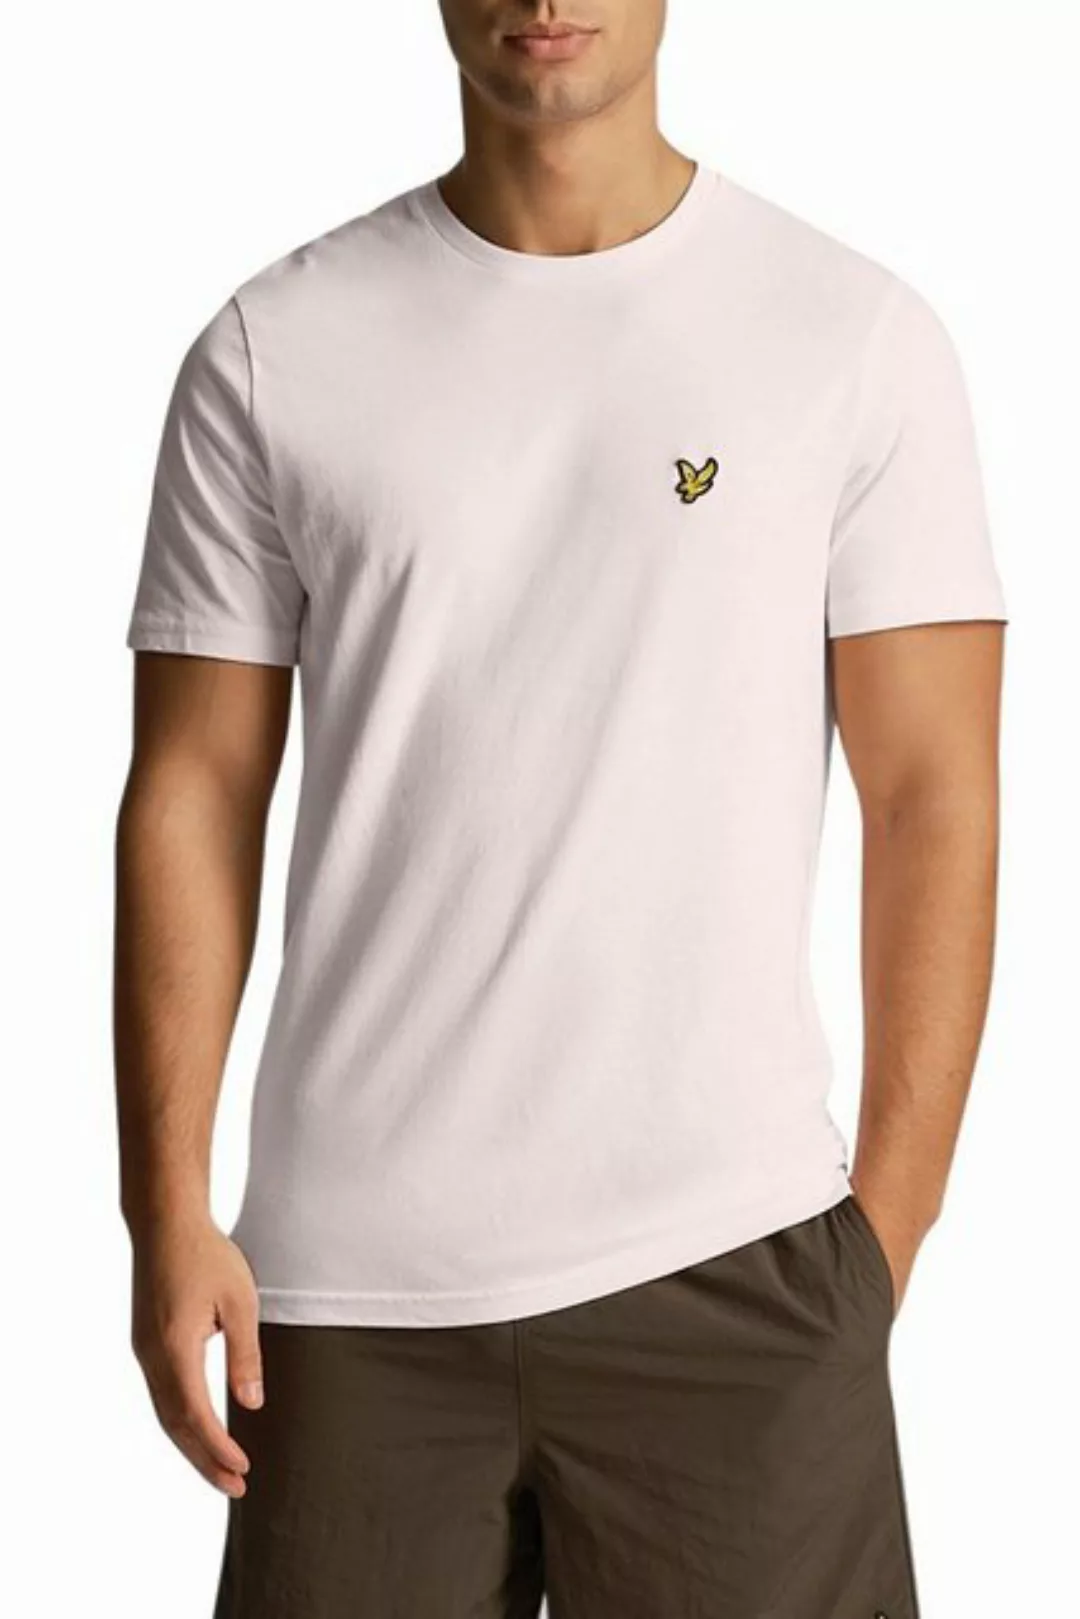 Lyle and Scott T-Shirt Blau - Größe S günstig online kaufen